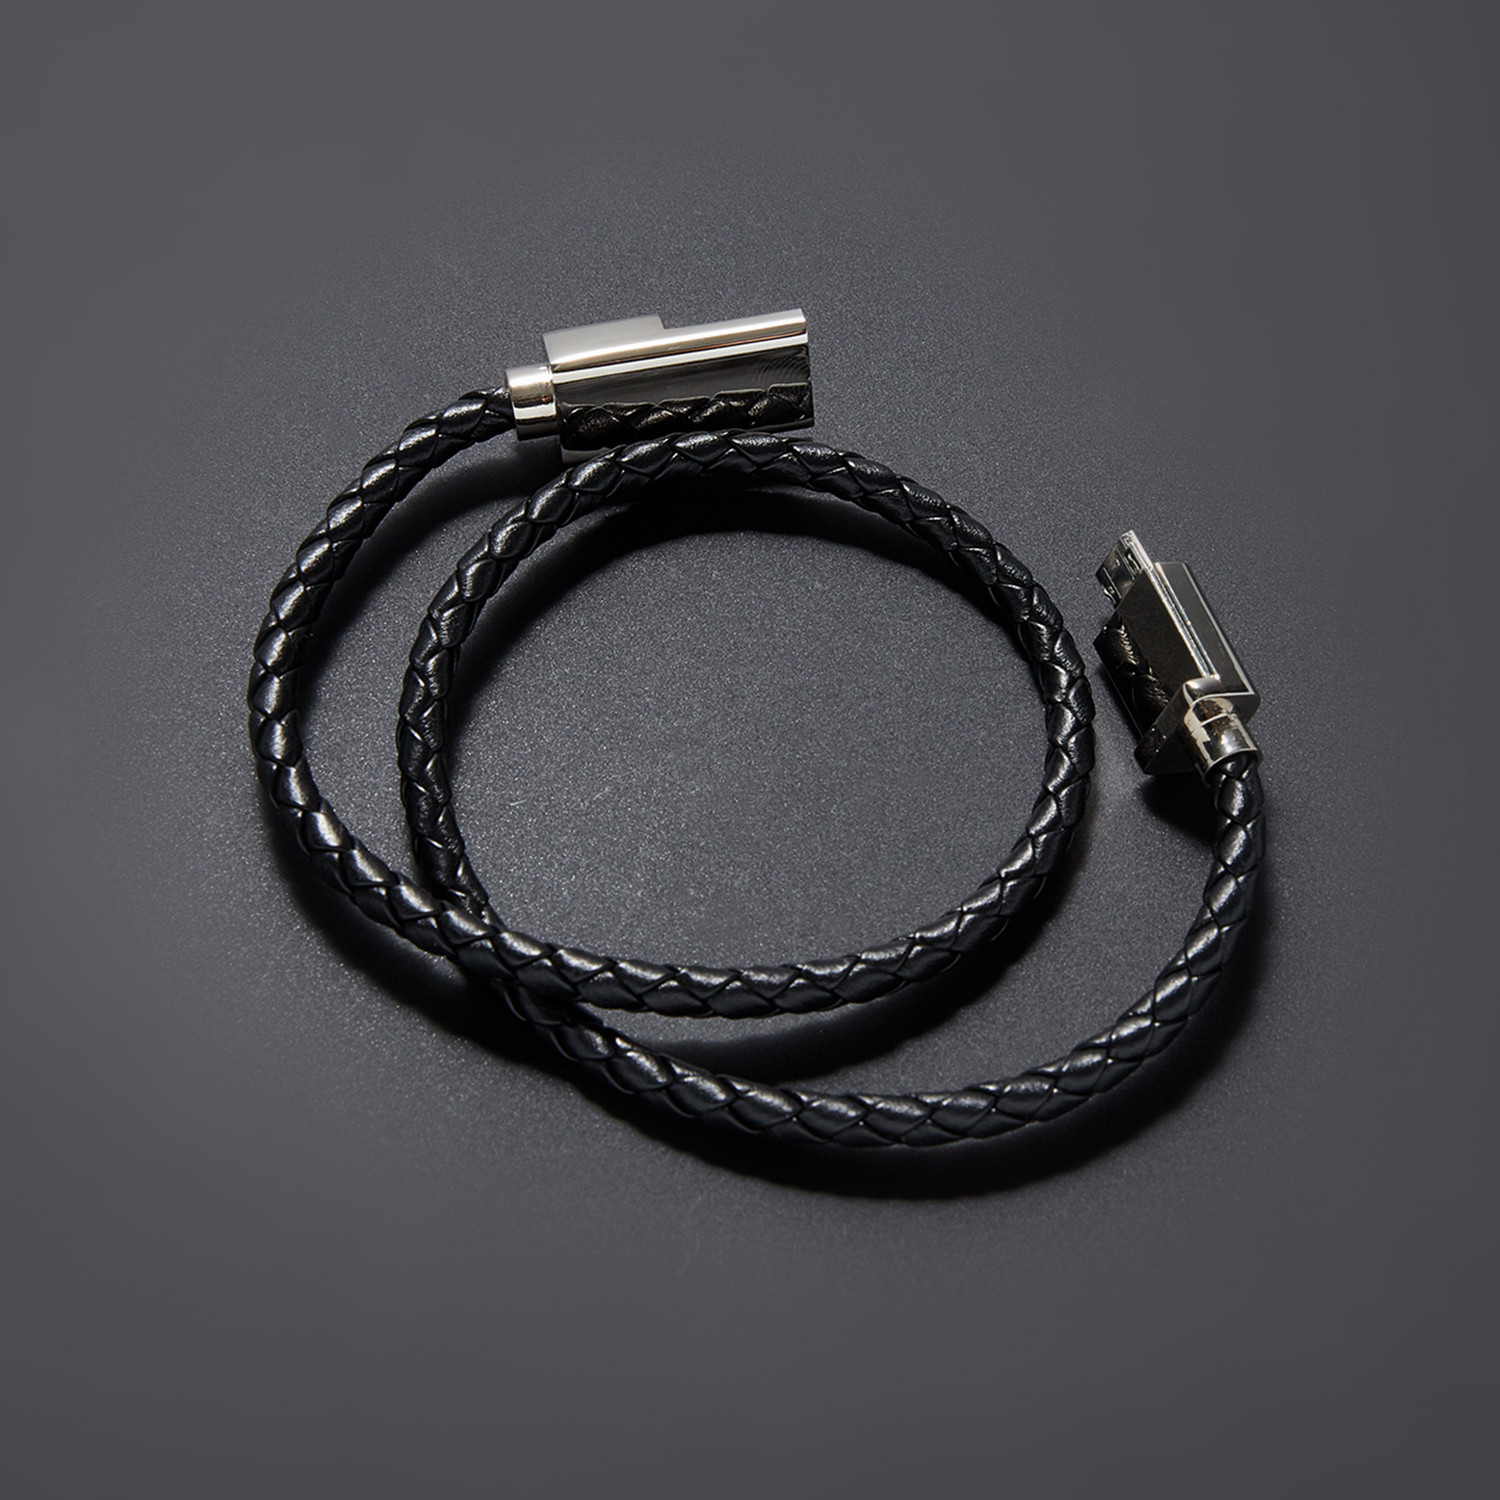 Charging Cable Bracelet Double Wrap // Black + Silver (15